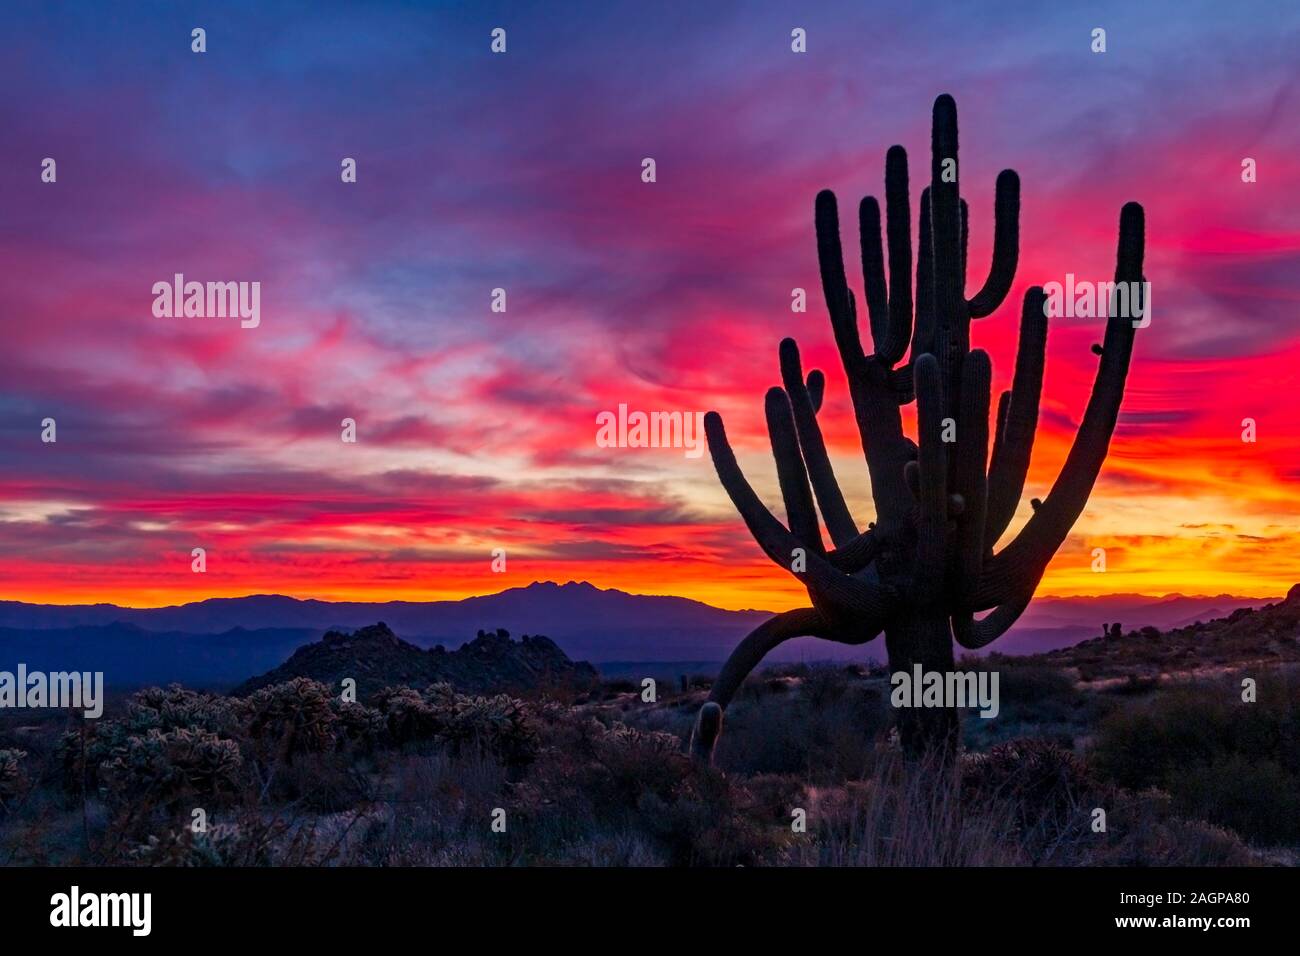 Super Lebendige & Brillant Sonnenaufgang in der Wüste von Arizona mit großen Saguaro Kaktus. Stockfoto